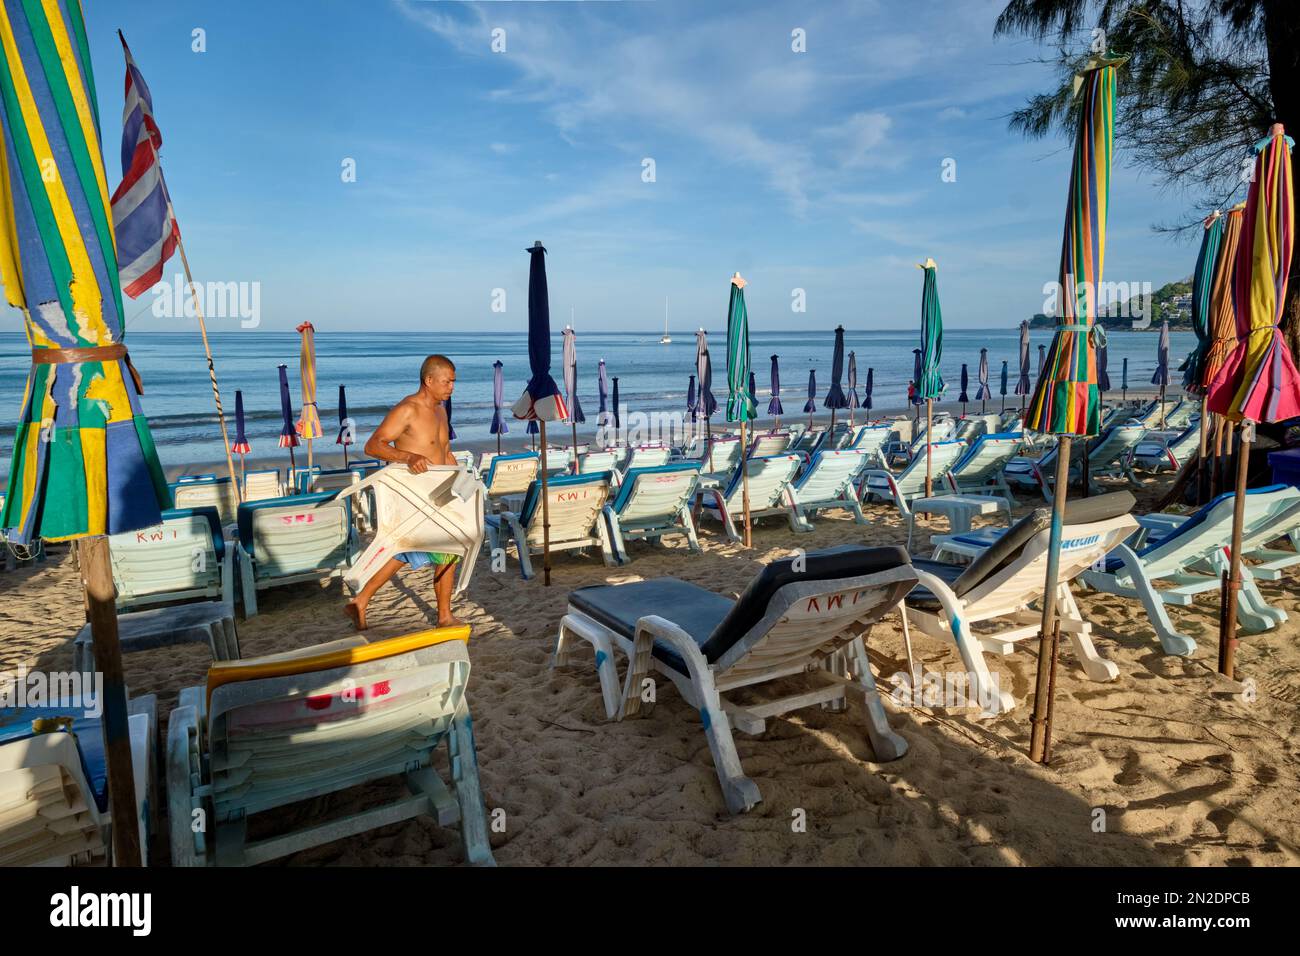 Tôt le matin à Kamala Beach, Phuket, Thaïlande, un homme prépare des chaises longues et des parasols de plage pour les clients attendus Banque D'Images